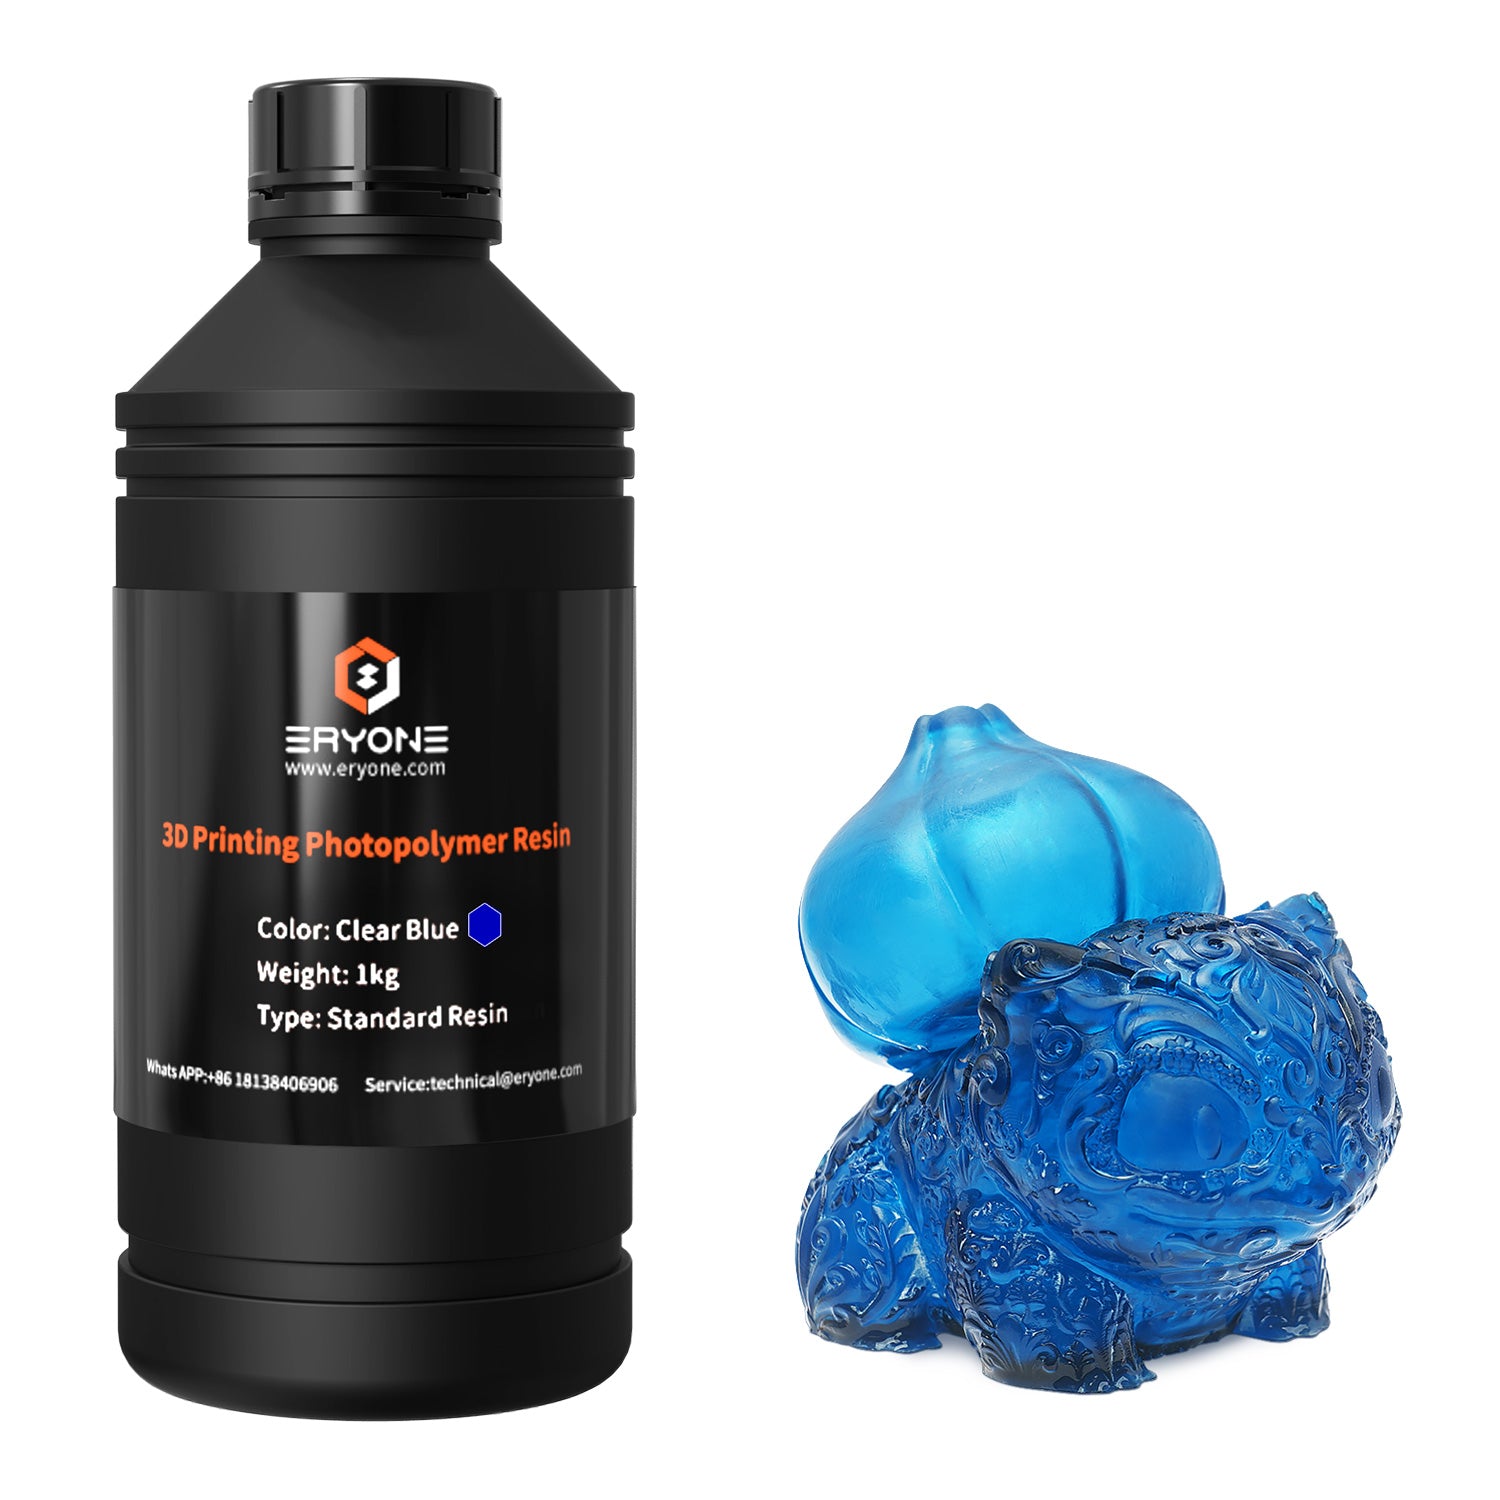 ERYONE Super Low Odor 3D Printer Photopolymer Resin 1kG